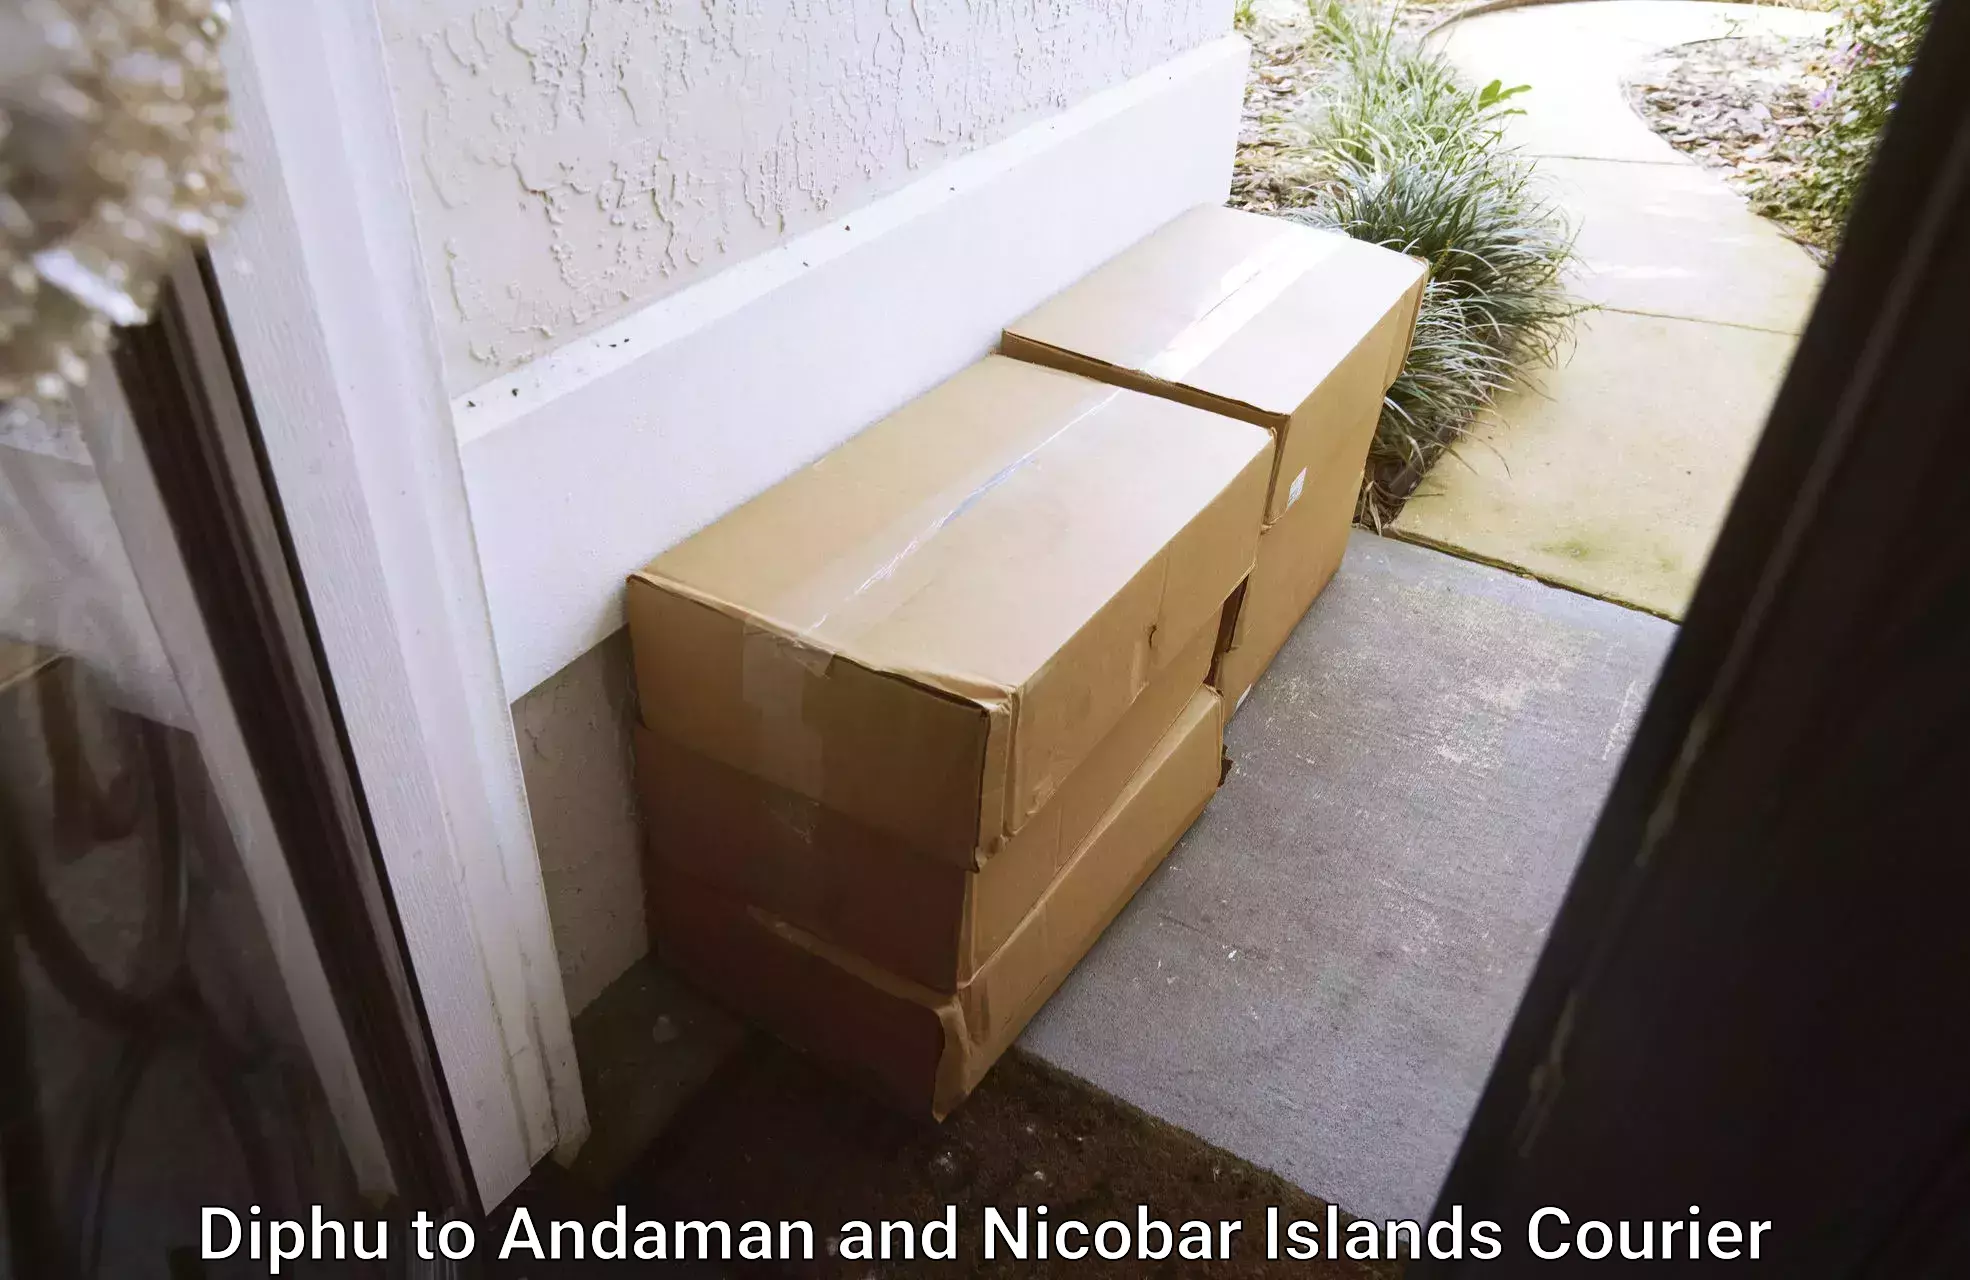 Versatile courier options Diphu to Andaman and Nicobar Islands